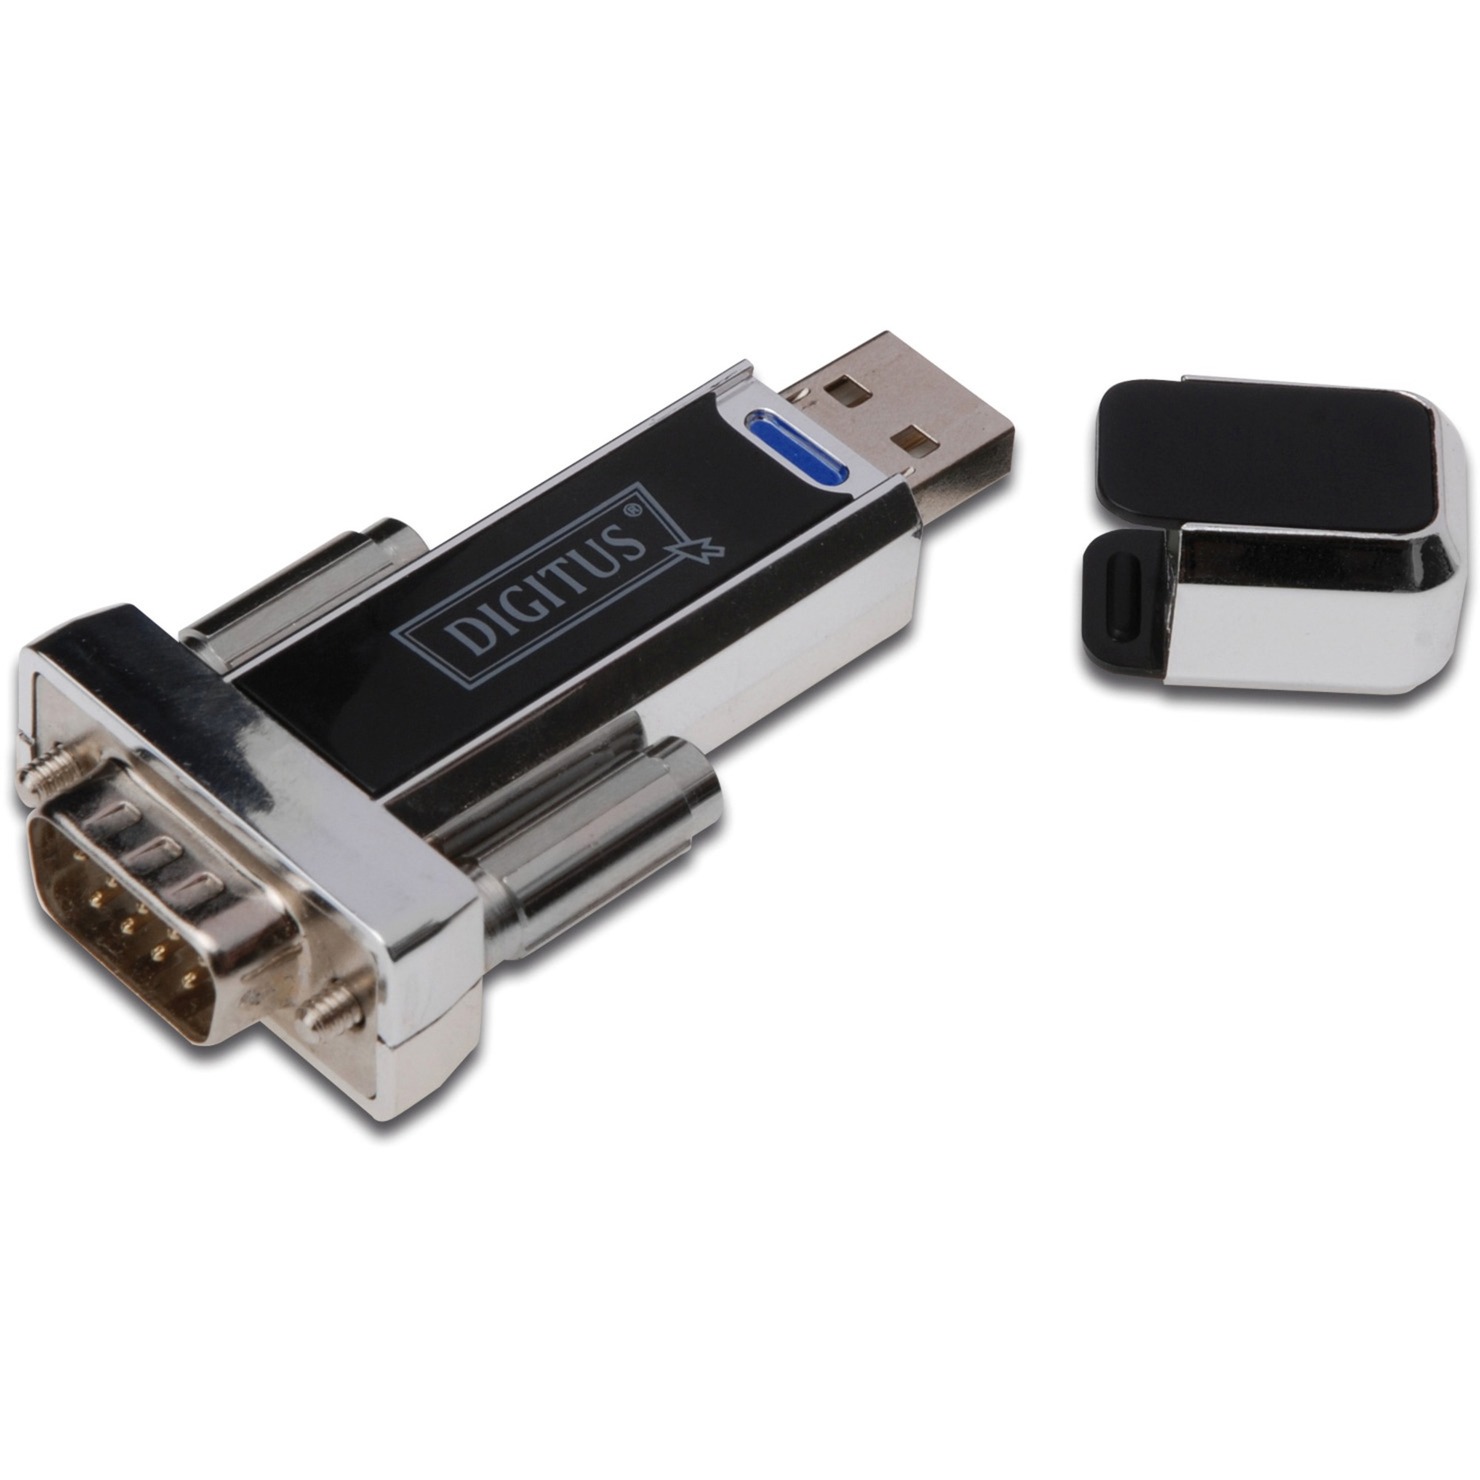 USB 1.1 Serial adapter